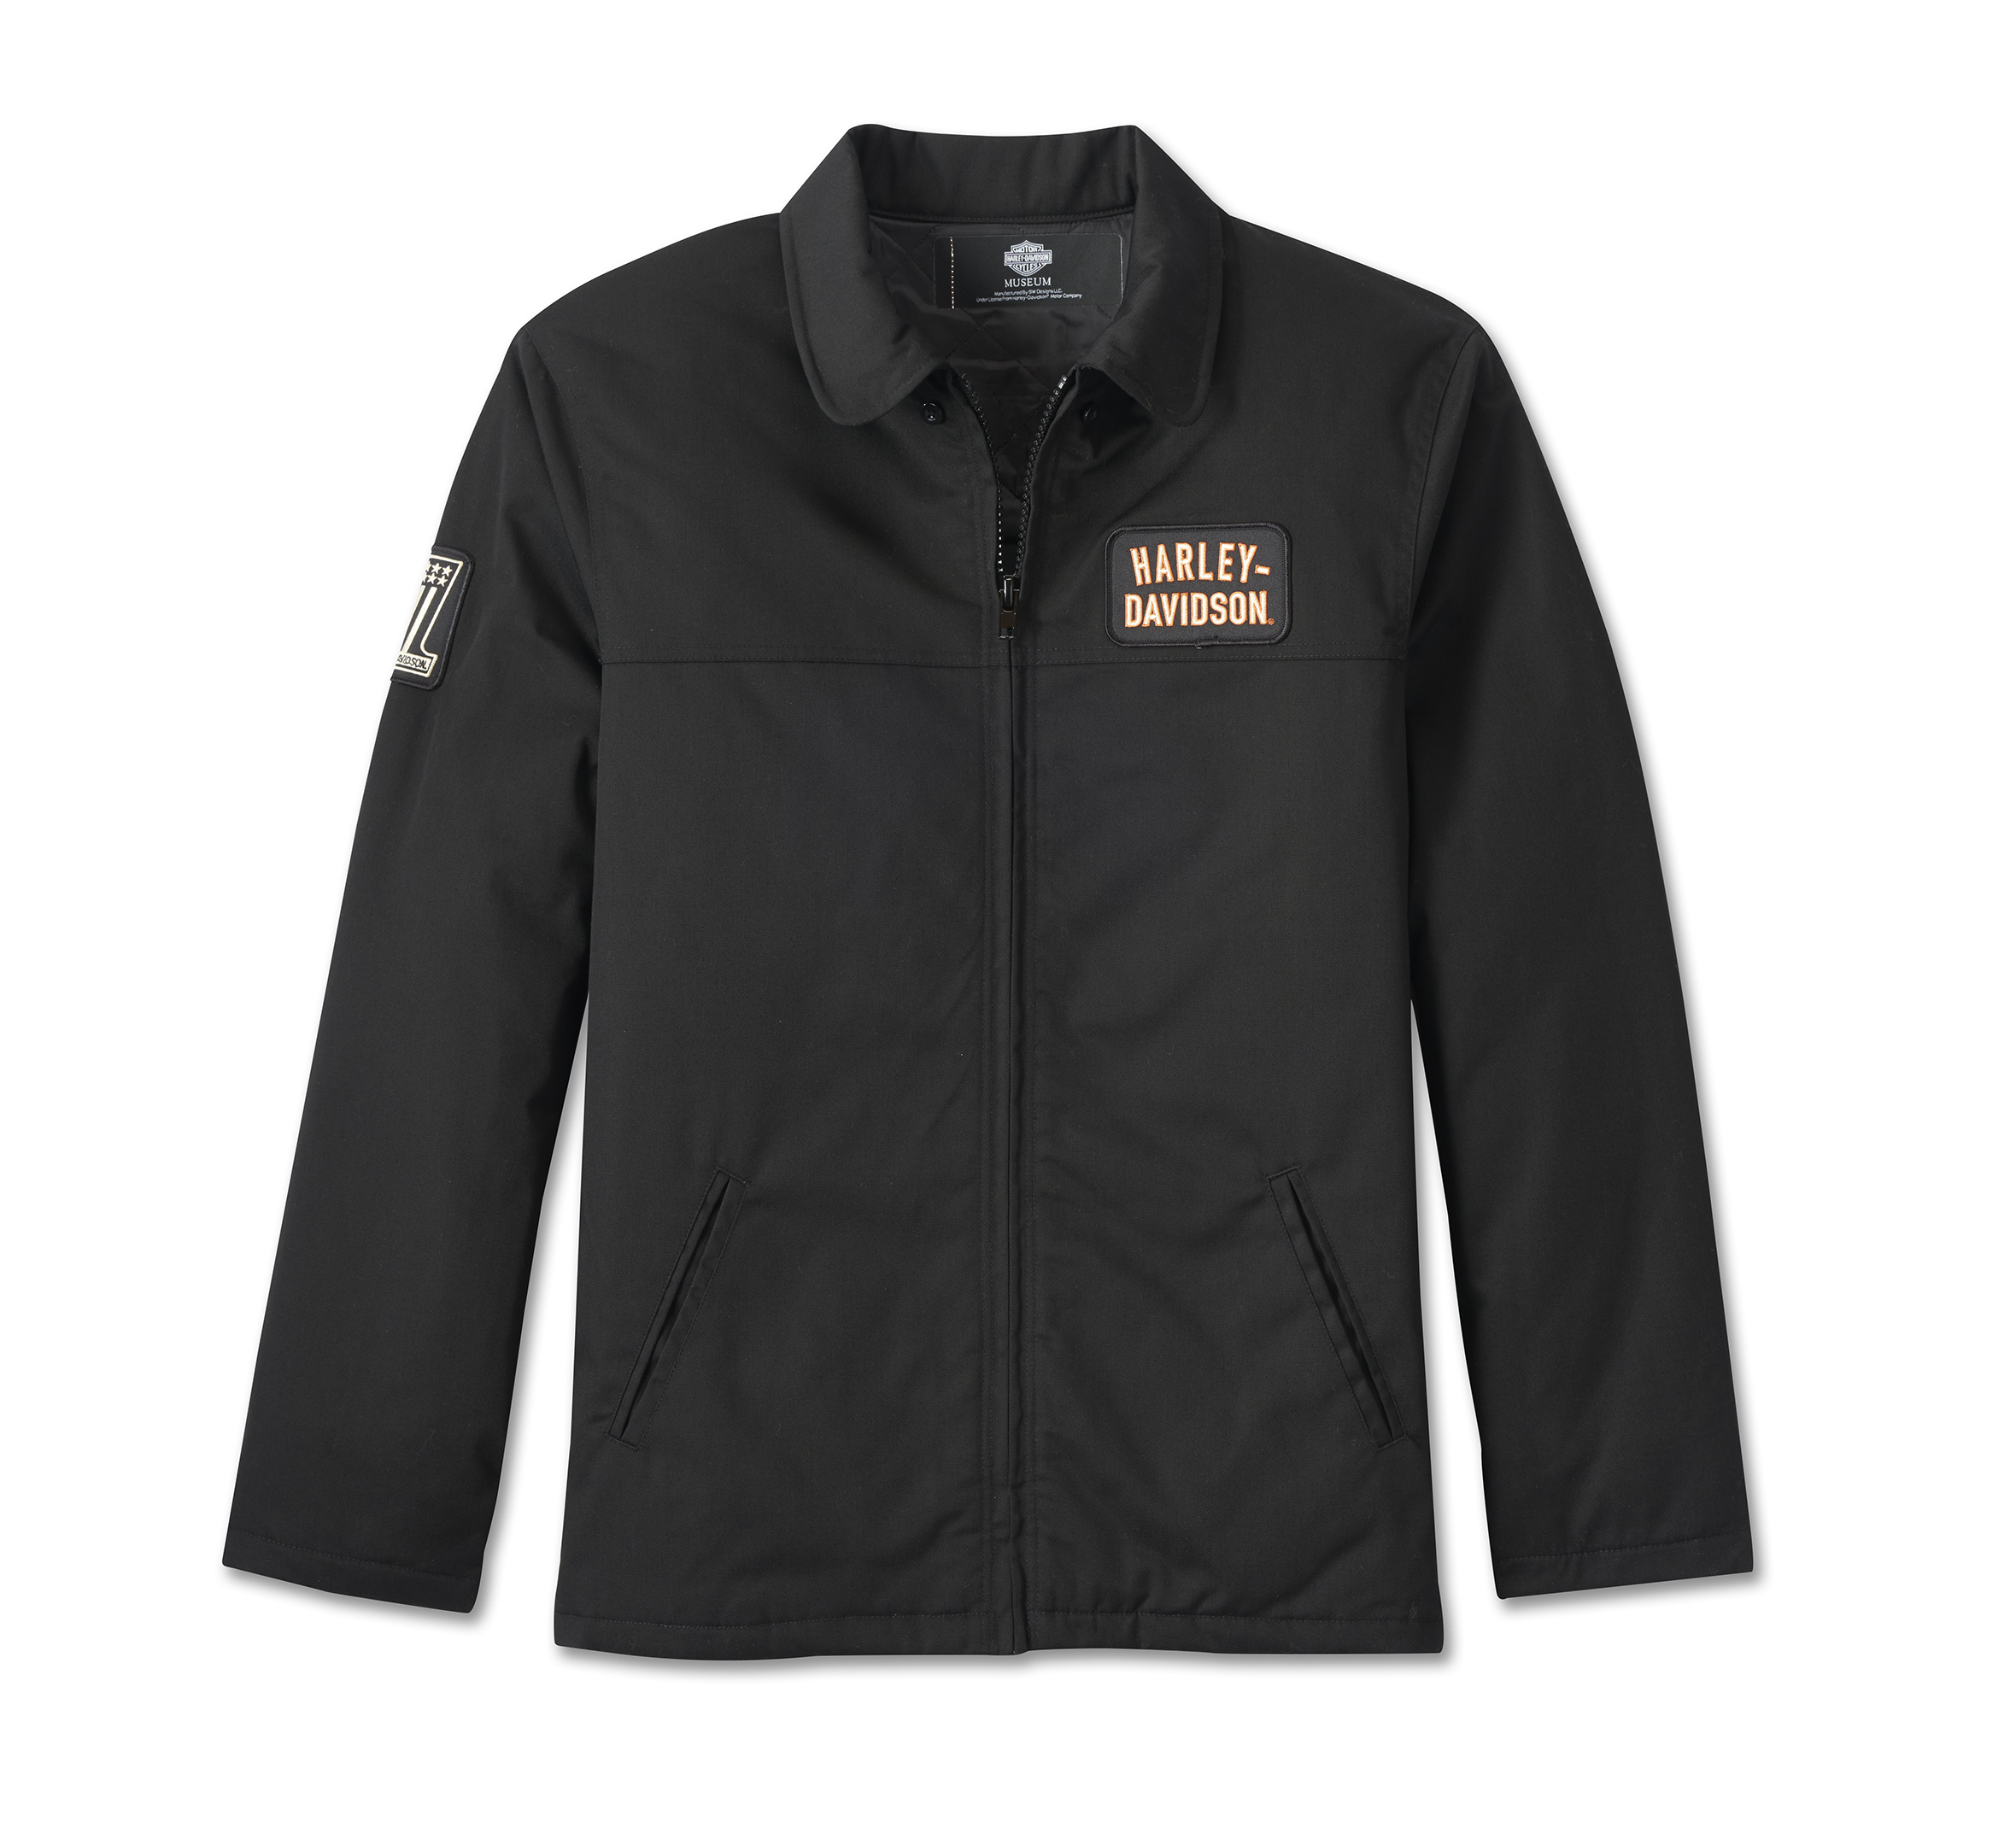 Men's Racing Work Jacket | Harley-Davidson USA